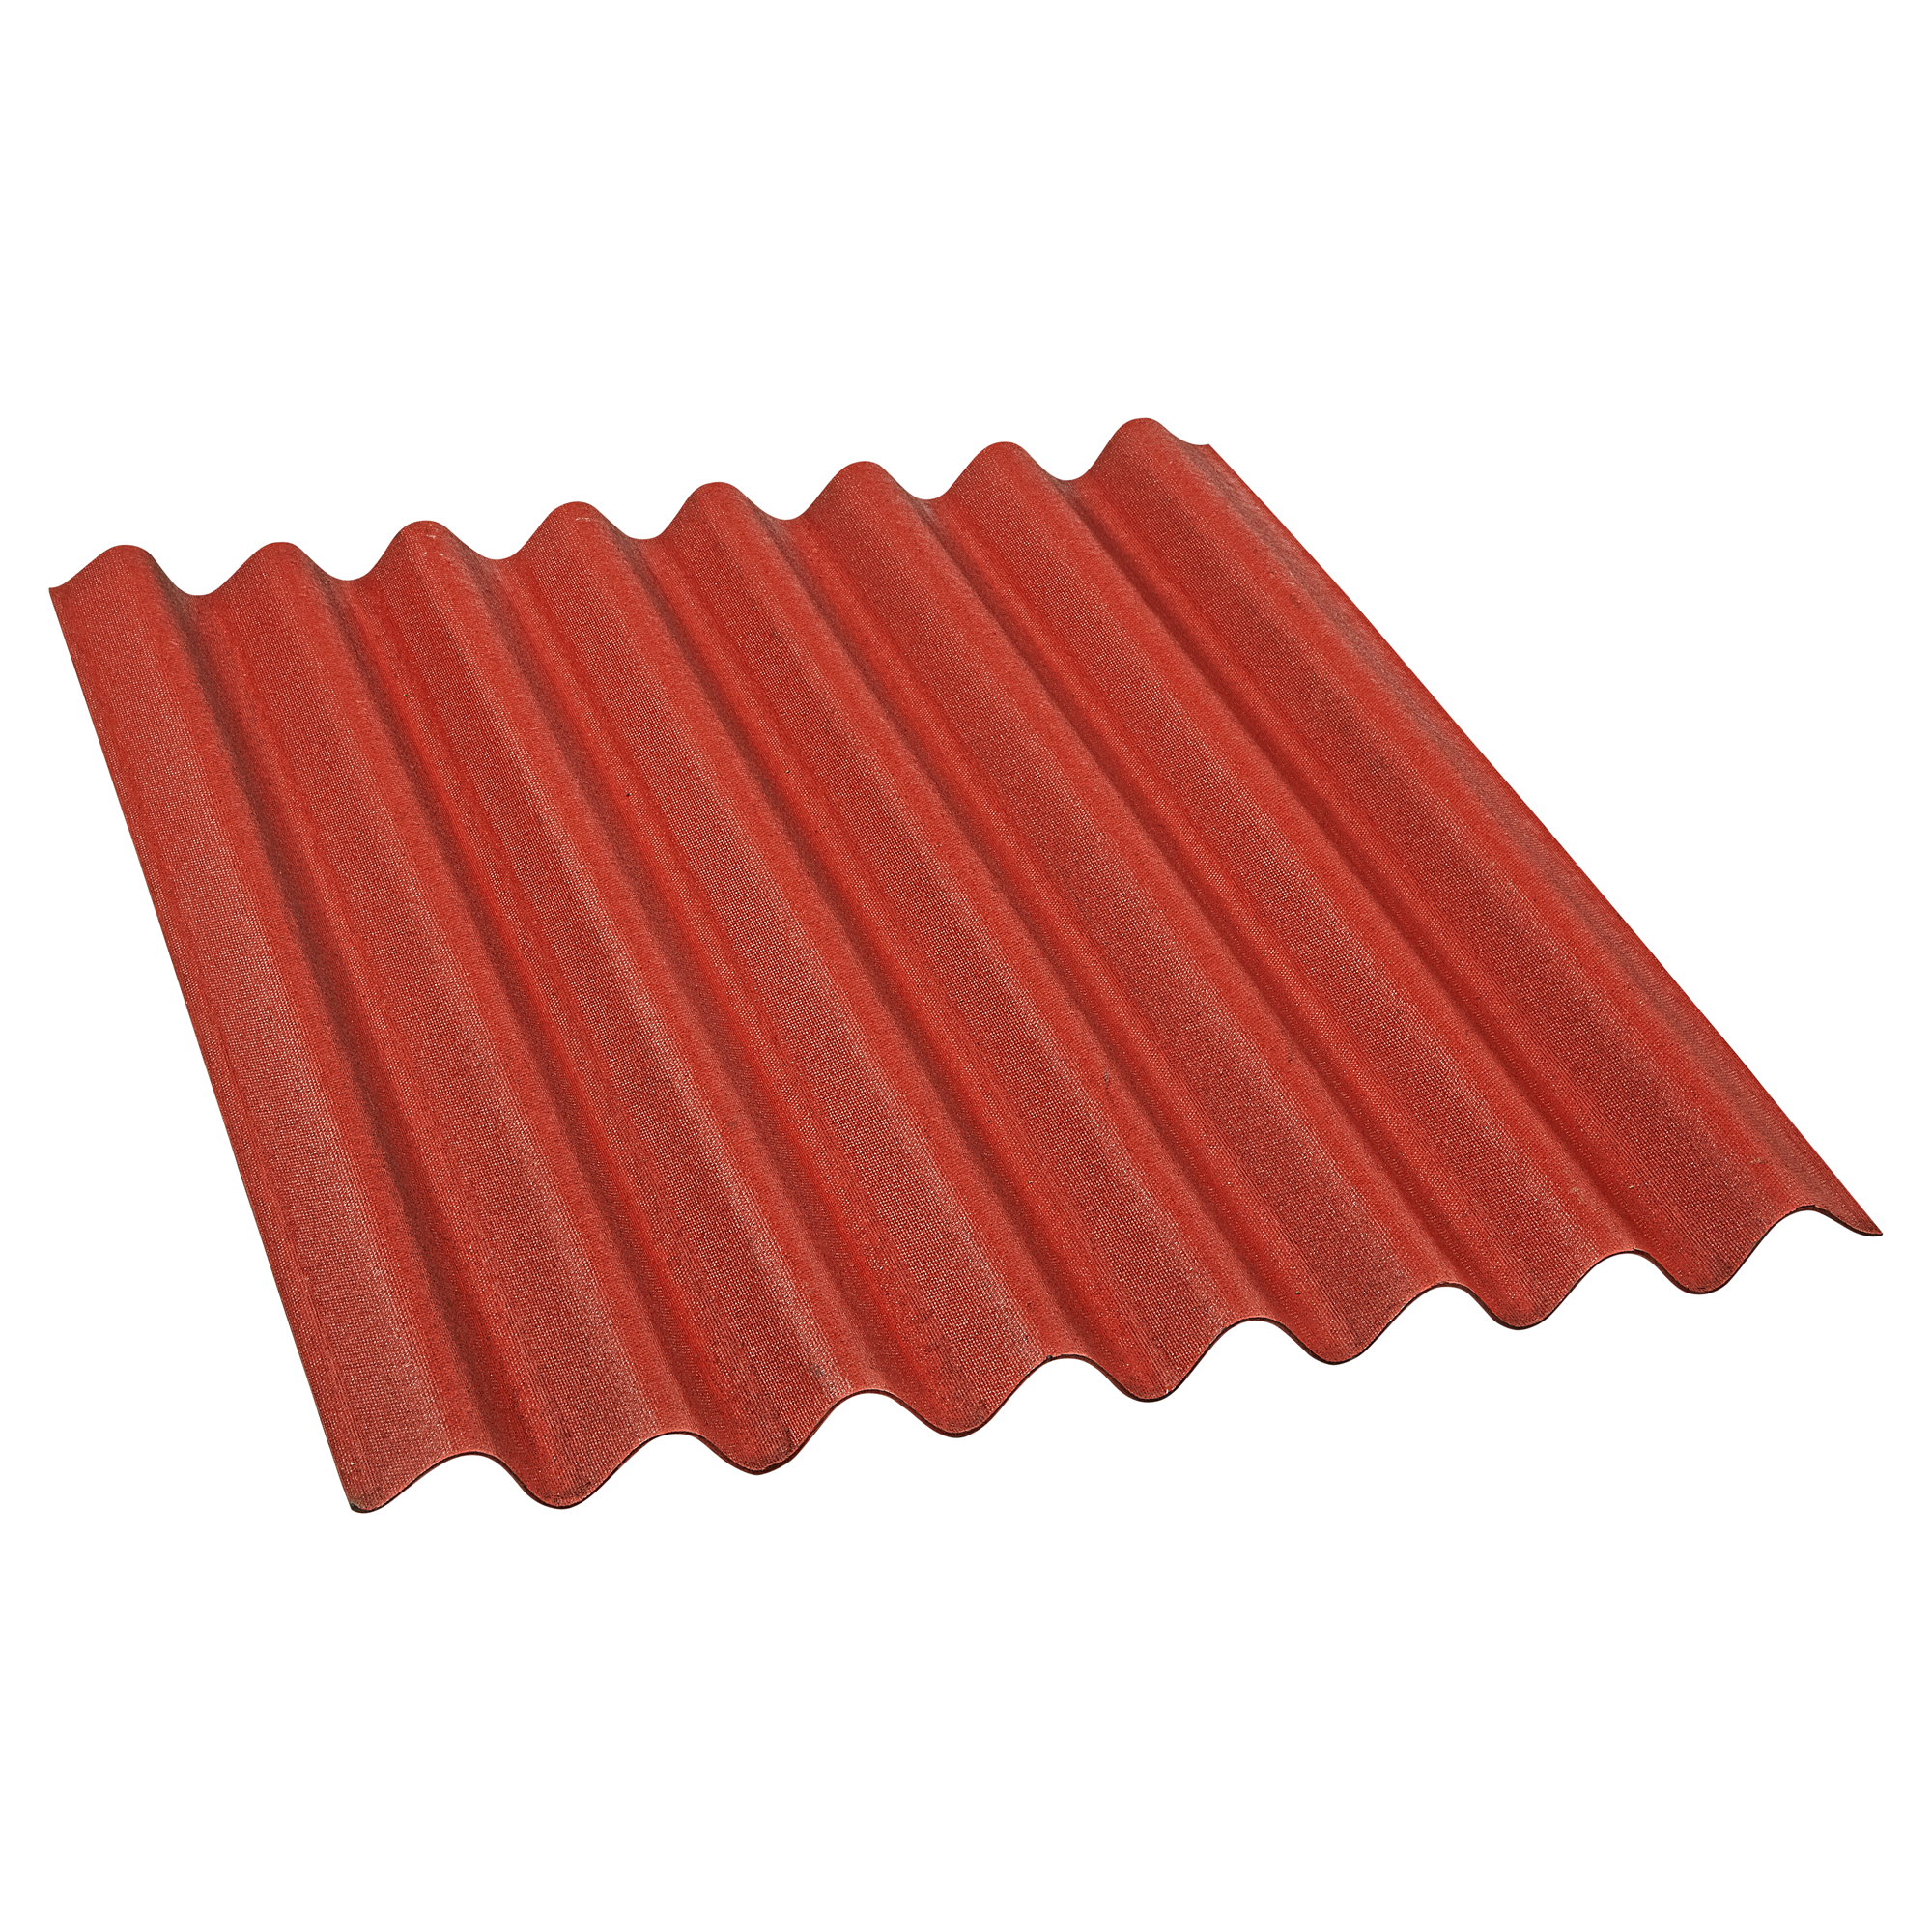 Dachplatte 'Easyline' Bitumen rot 100 x 76 cm